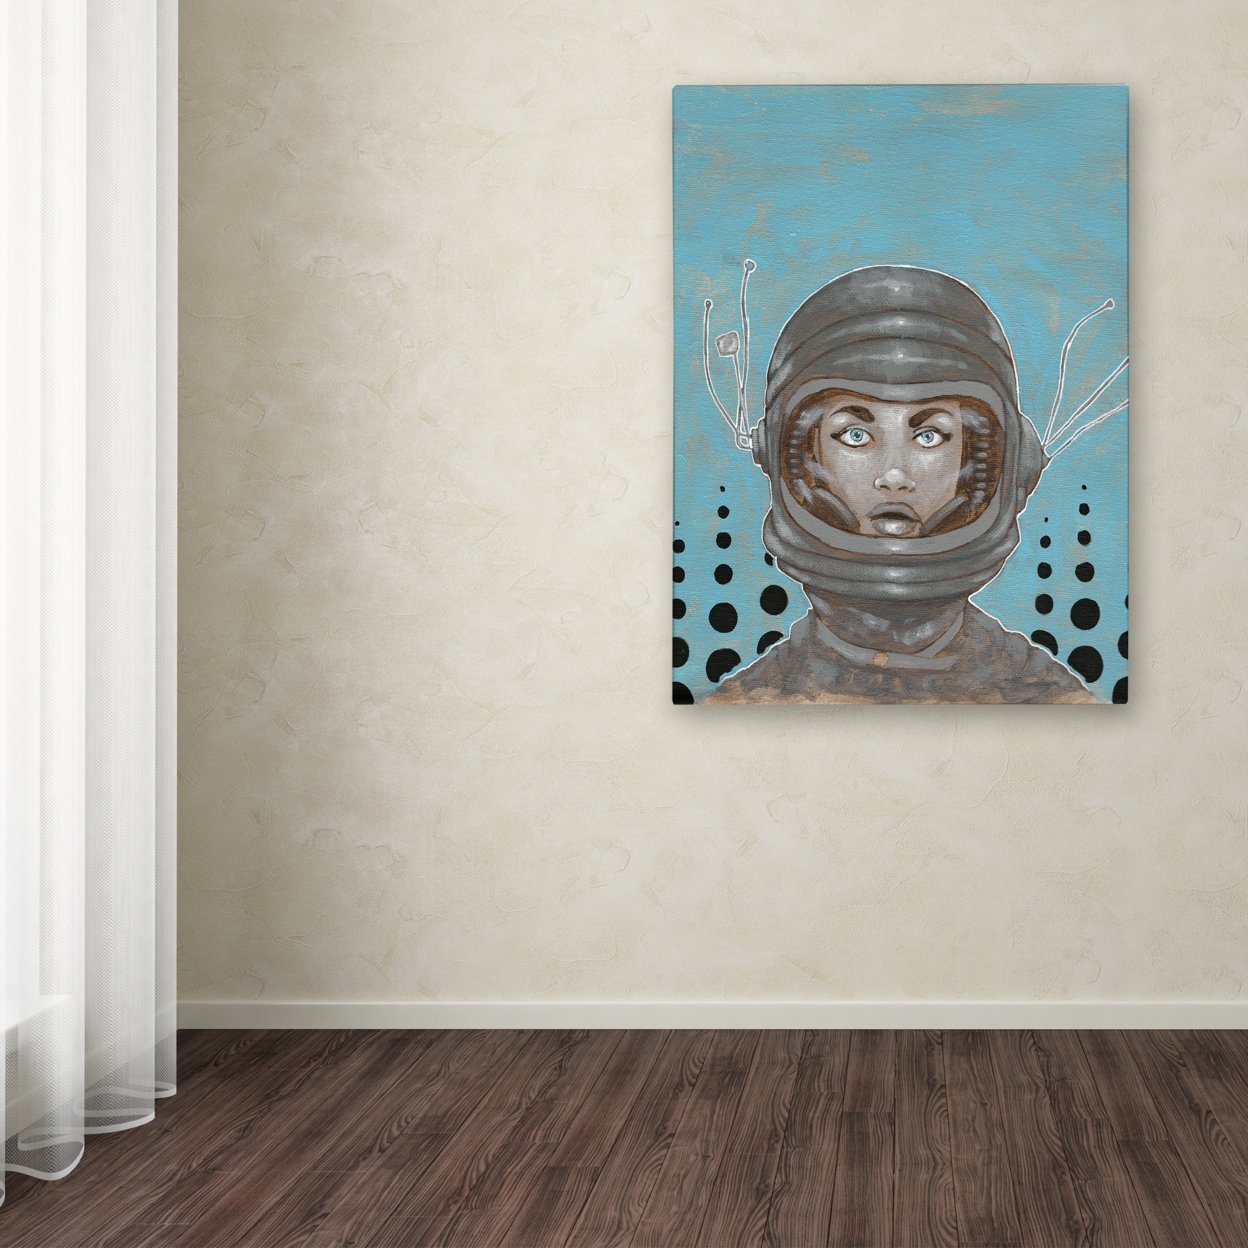 Craig Snodgrass 'Sally-Saturn' Canvas Wall Art 35 X 47 Inches